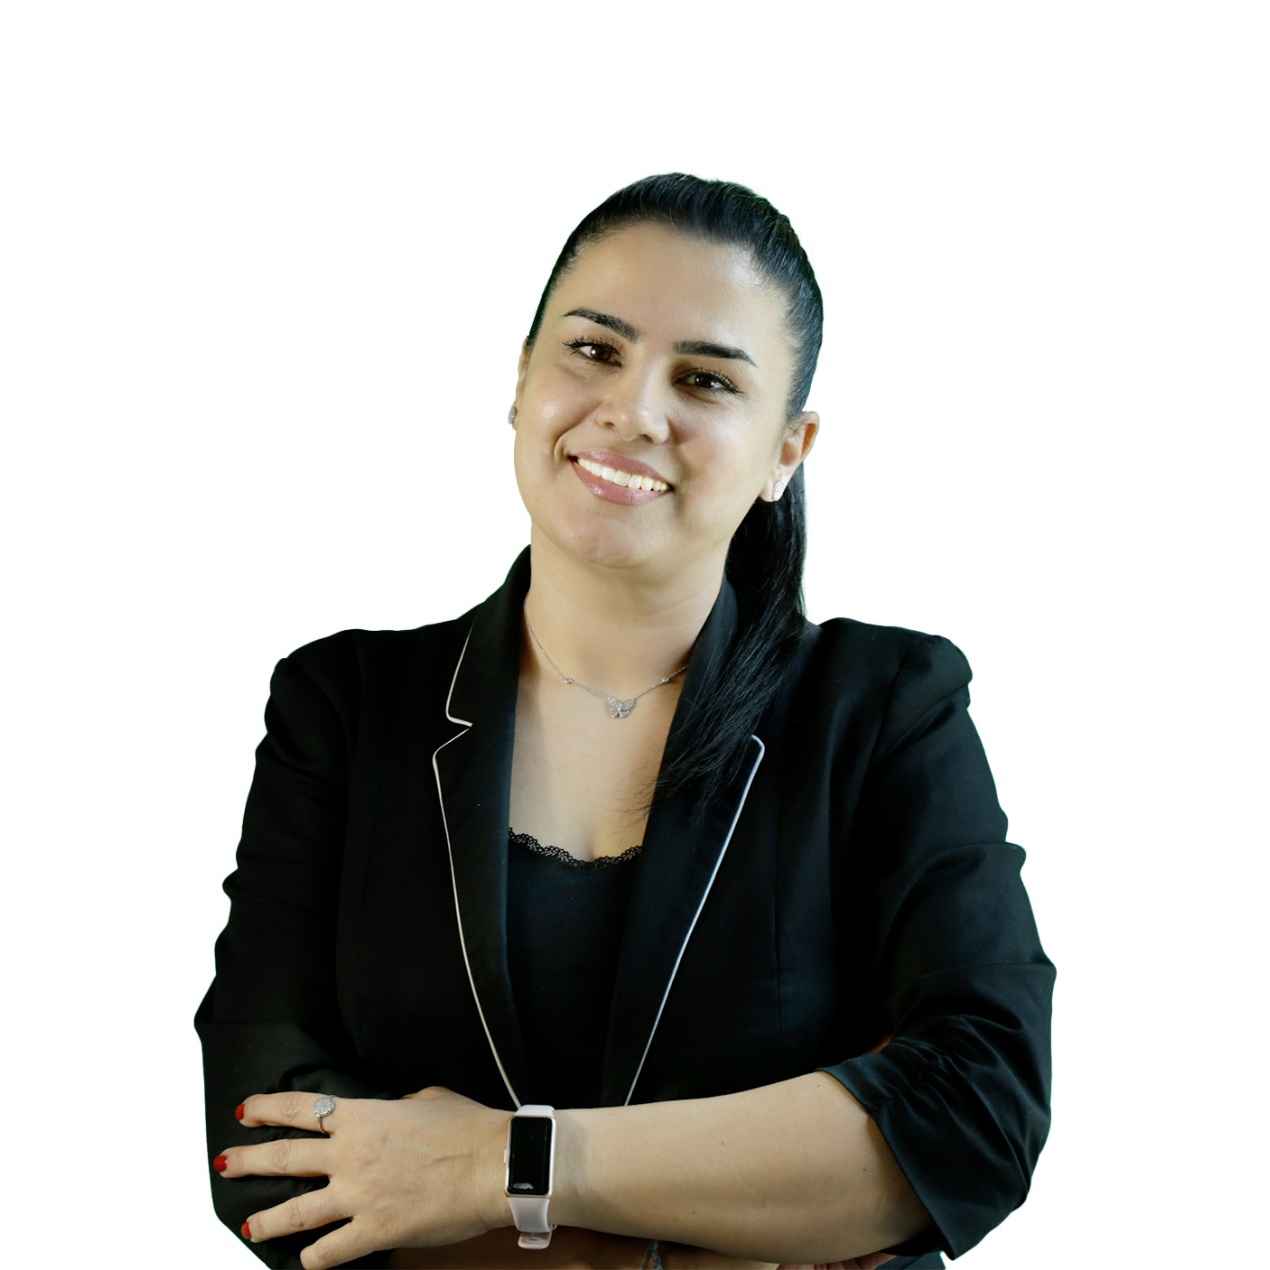 Zabia Almobayed